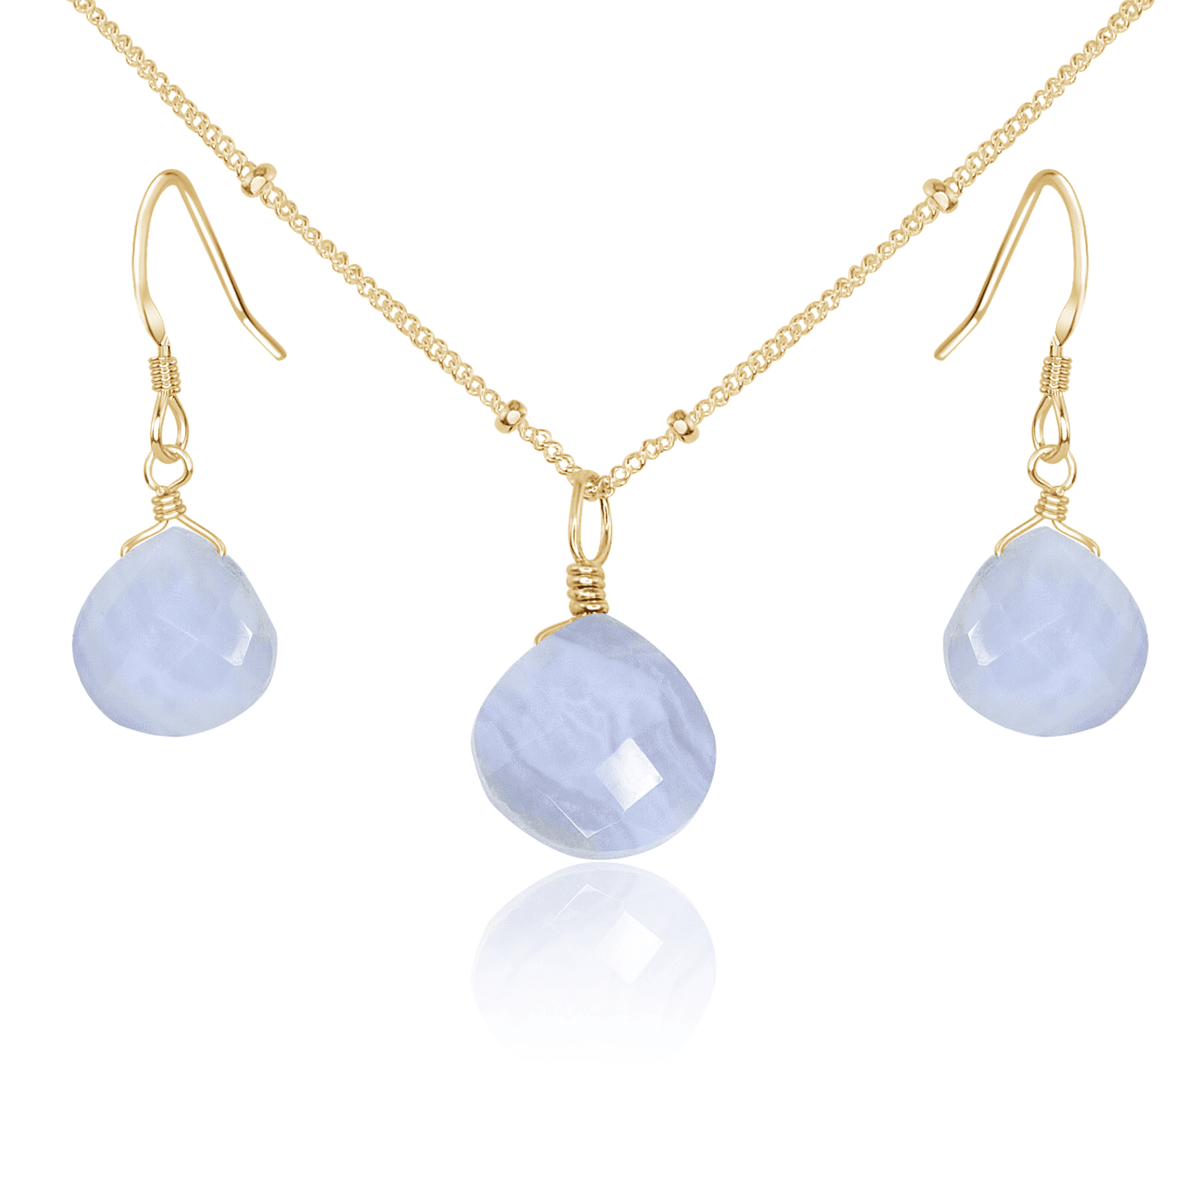 Blue Lace Agate Tiny Teardrop Earrings & Necklace Set - Blue Lace Agate Tiny Teardrop Earrings & Necklace Set - 14k Gold Fill / Satellite - Luna Tide Handmade Crystal Jewellery